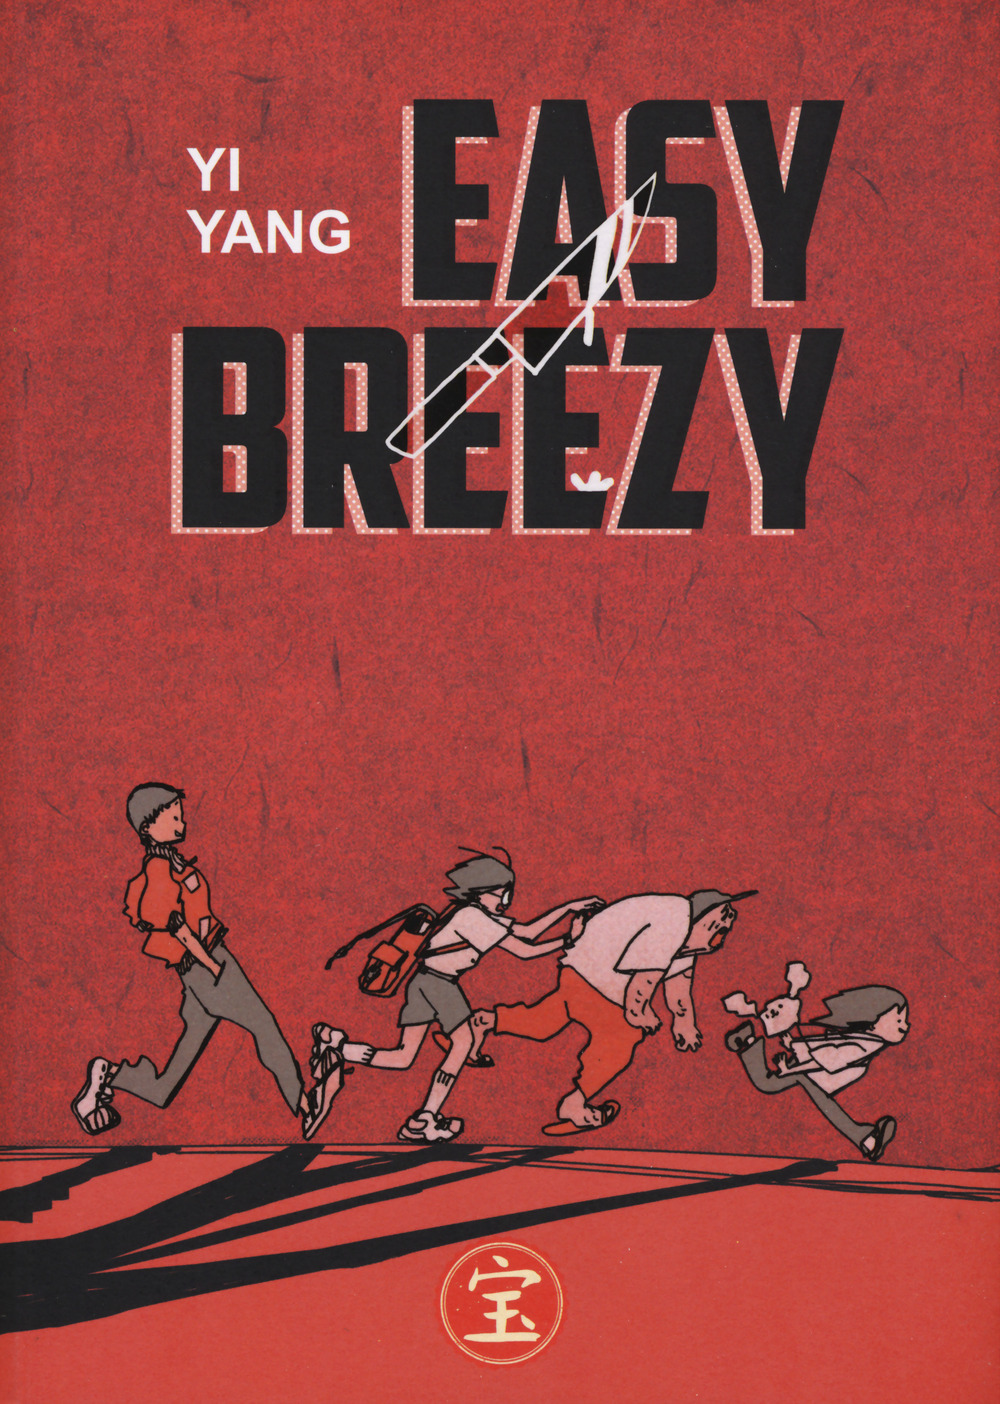 Libri Yi Yang - Easy Breezy NUOVO SIGILLATO, EDIZIONE DEL 18/03/2021 SUBITO DISPONIBILE